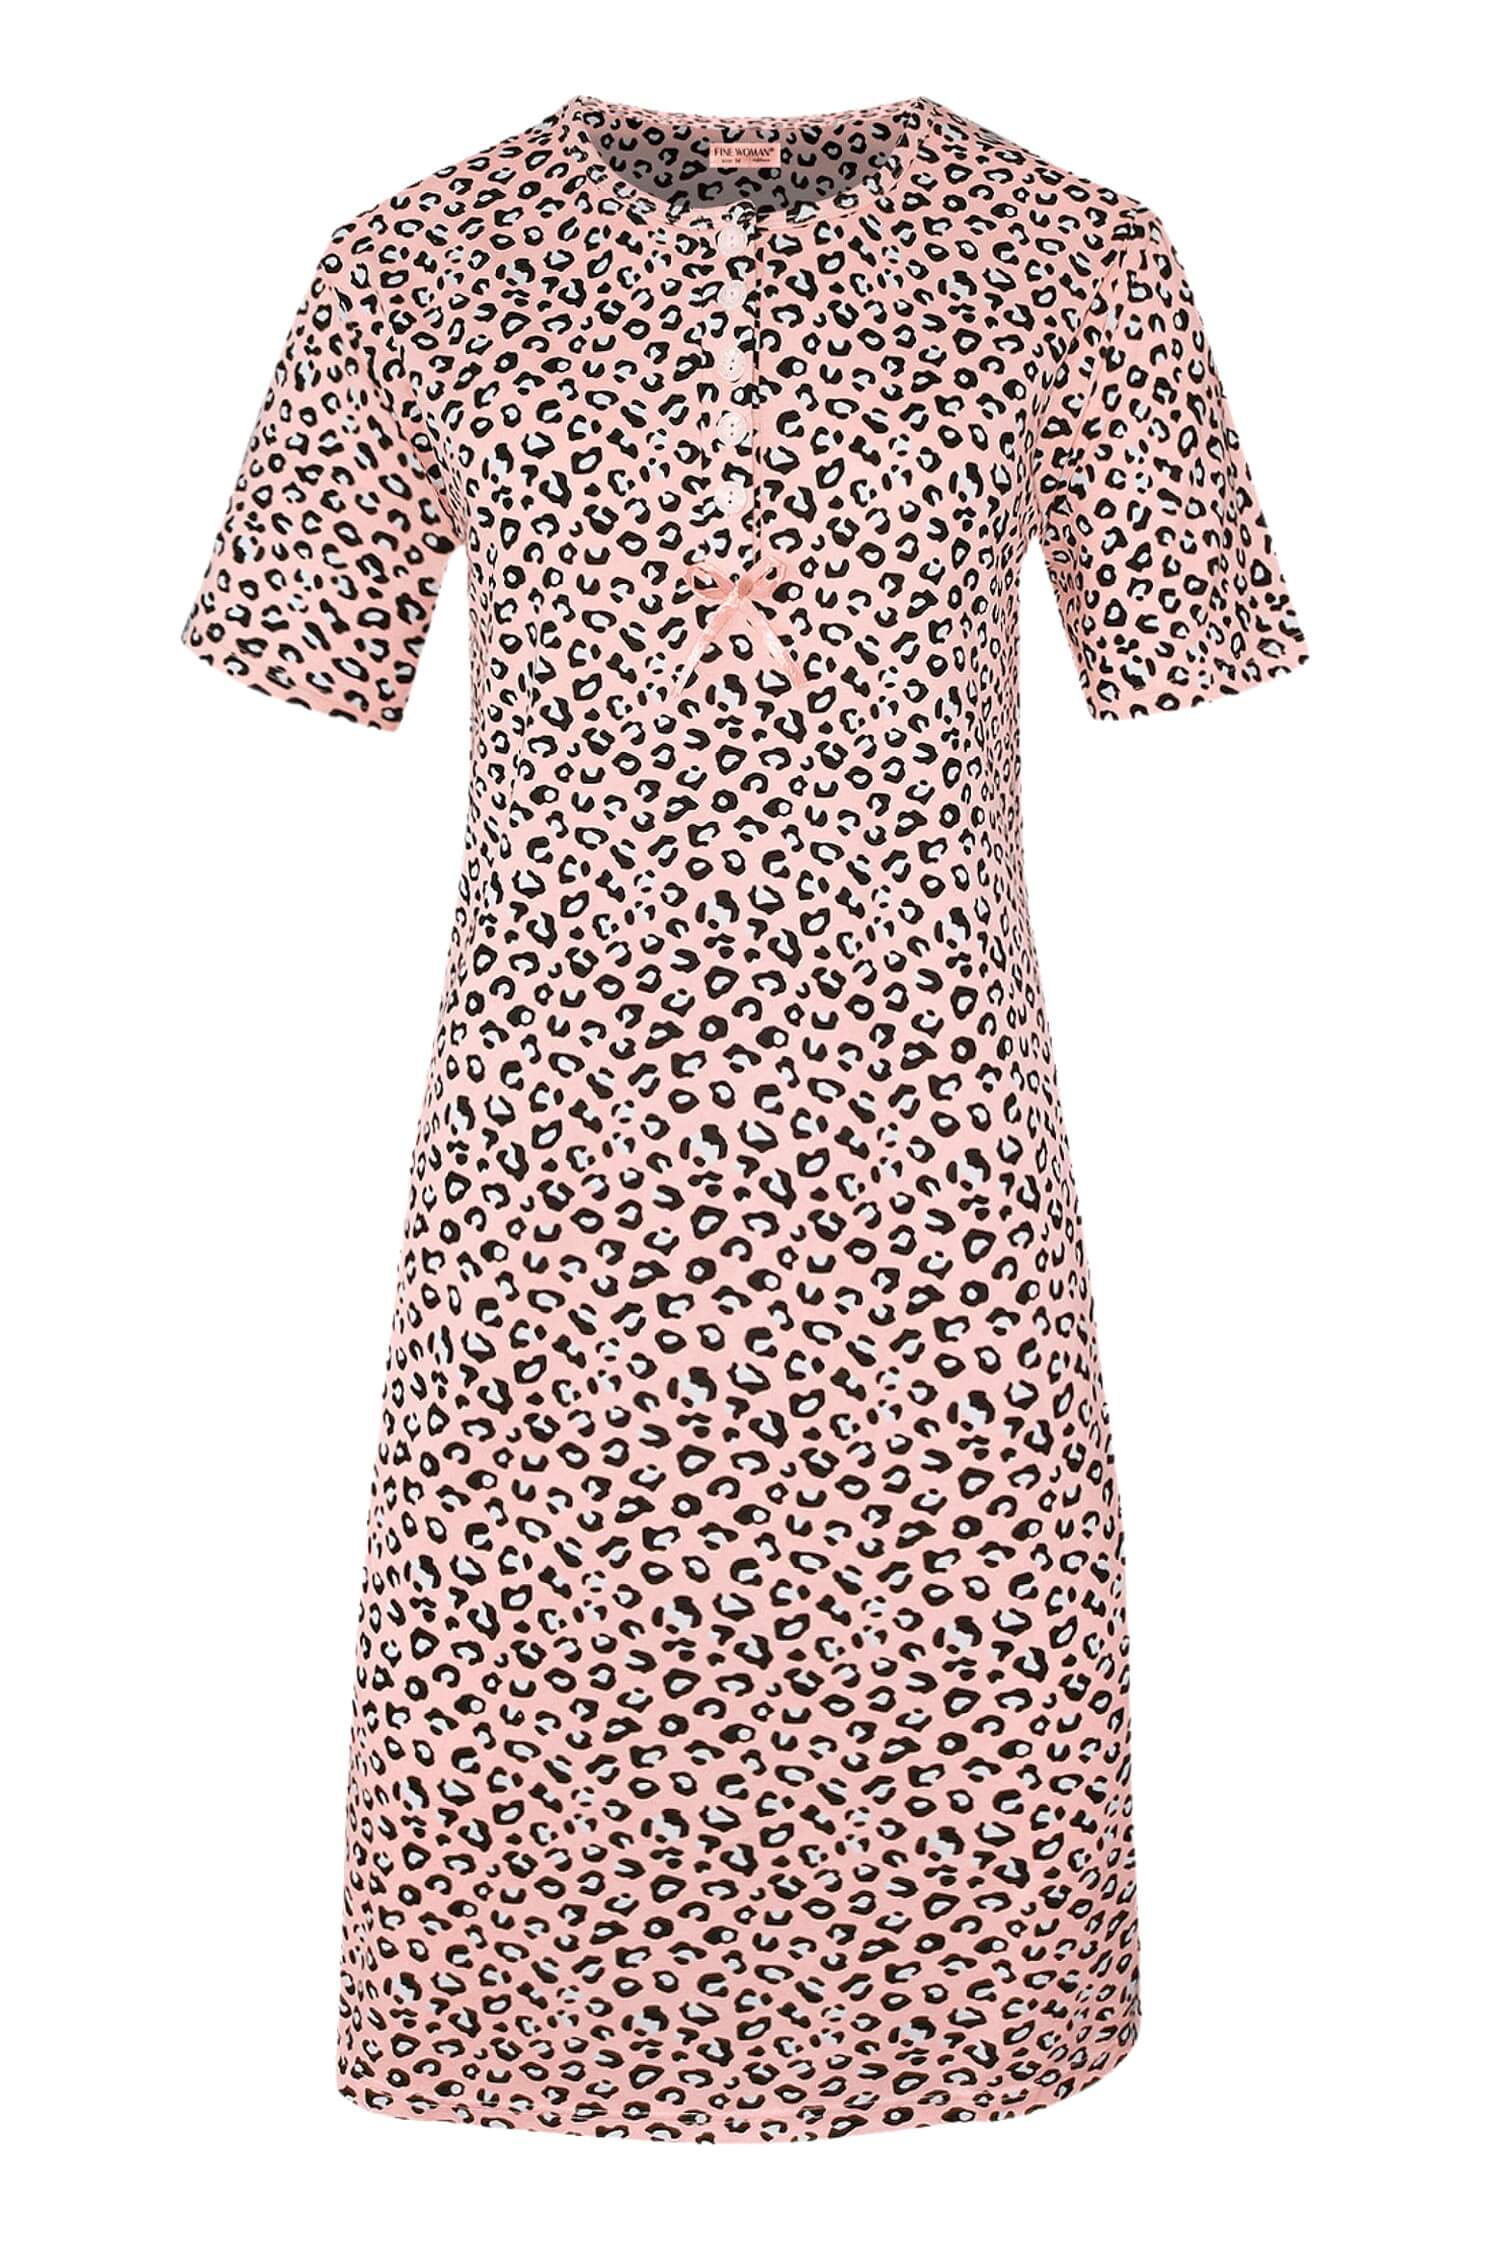 Katarina dámská noční košile leopardí vzor 6529 XL světle růžová